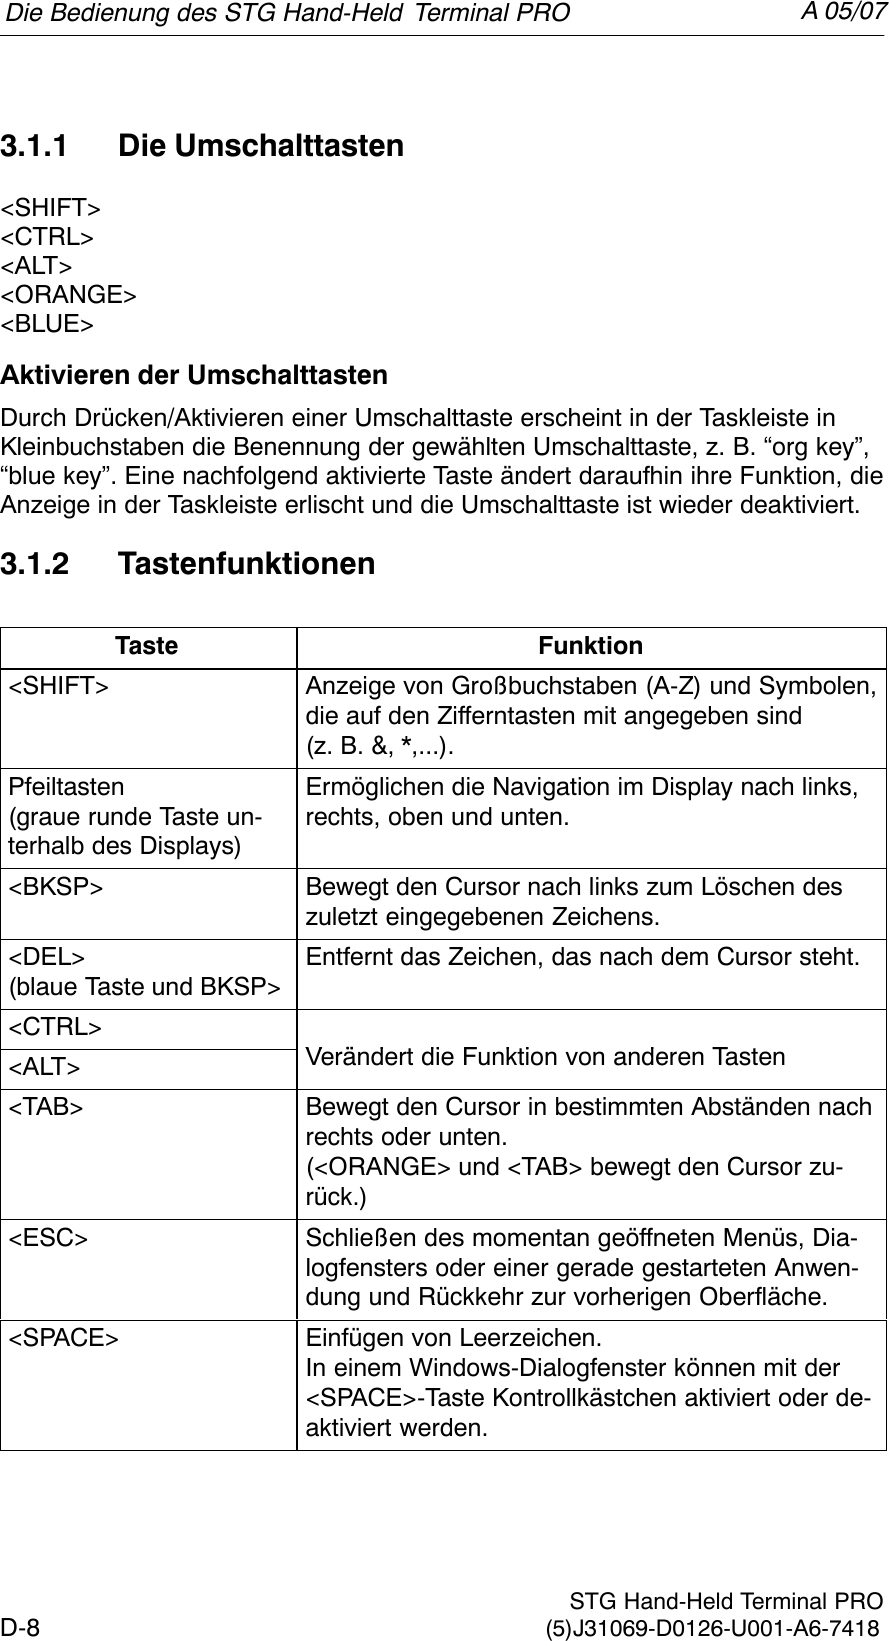 A 05/07D-8 STG Hand-Held Terminal PRO(5)J31069-D0126-U001-A6-74183.1.1 Die Umschalttasten&lt;SHIFT&gt;&lt;CTRL&gt;&lt;ALT&gt;&lt;ORANGE&gt;&lt;BLUE&gt;Aktivieren der UmschalttastenDurch Drücken/Aktivieren einer Umschalttaste erscheint in der Taskleiste inKleinbuchstaben die Benennung der gewählten Umschalttaste, z. B. “org key”,“blue key”. Eine nachfolgend aktivierte Taste ändert daraufhin ihre Funktion, dieAnzeige in der Taskleiste erlischt und die Umschalttaste ist wieder deaktiviert.3.1.2 TastenfunktionenTaste Funktion&lt;SHIFT&gt; Anzeige von Großbuchstaben (A-Z) und Symbolen,die auf den Zifferntasten mit angegeben sind (z. B. &amp;, *,...).Pfeiltasten(graue runde Taste un-terhalb des Displays)Ermöglichen die Navigation im Display nach links,rechts, oben und unten.&lt;BKSP&gt; Bewegt den Cursor nach links zum Löschen deszuletzt eingegebenen Zeichens.&lt;DEL&gt;(blaue Taste und BKSP&gt;Entfernt das Zeichen, das nach dem Cursor steht.&lt;CTRL&gt;Väd di Fki    d  T&lt;ALT&gt; Verändert die Funktion von anderen Tasten&lt;TAB&gt; Bewegt den Cursor in bestimmten Abständen nachrechts oder unten. (&lt;ORANGE&gt; und &lt;TAB&gt; bewegt den Cursor zu-rück.)&lt;ESC&gt; Schließen des momentan geöffneten Menüs, Dia-logfensters oder einer gerade gestarteten Anwen-dung und Rückkehr zur vorherigen Oberfläche.&lt;SPACE&gt; Einfügen von Leerzeichen. In einem Windows-Dialogfenster können mit der&lt;SPACE&gt;-Taste Kontrollkästchen aktiviert oder de-aktiviert werden.Die Bedienung des STG Hand-Held Terminal PRO